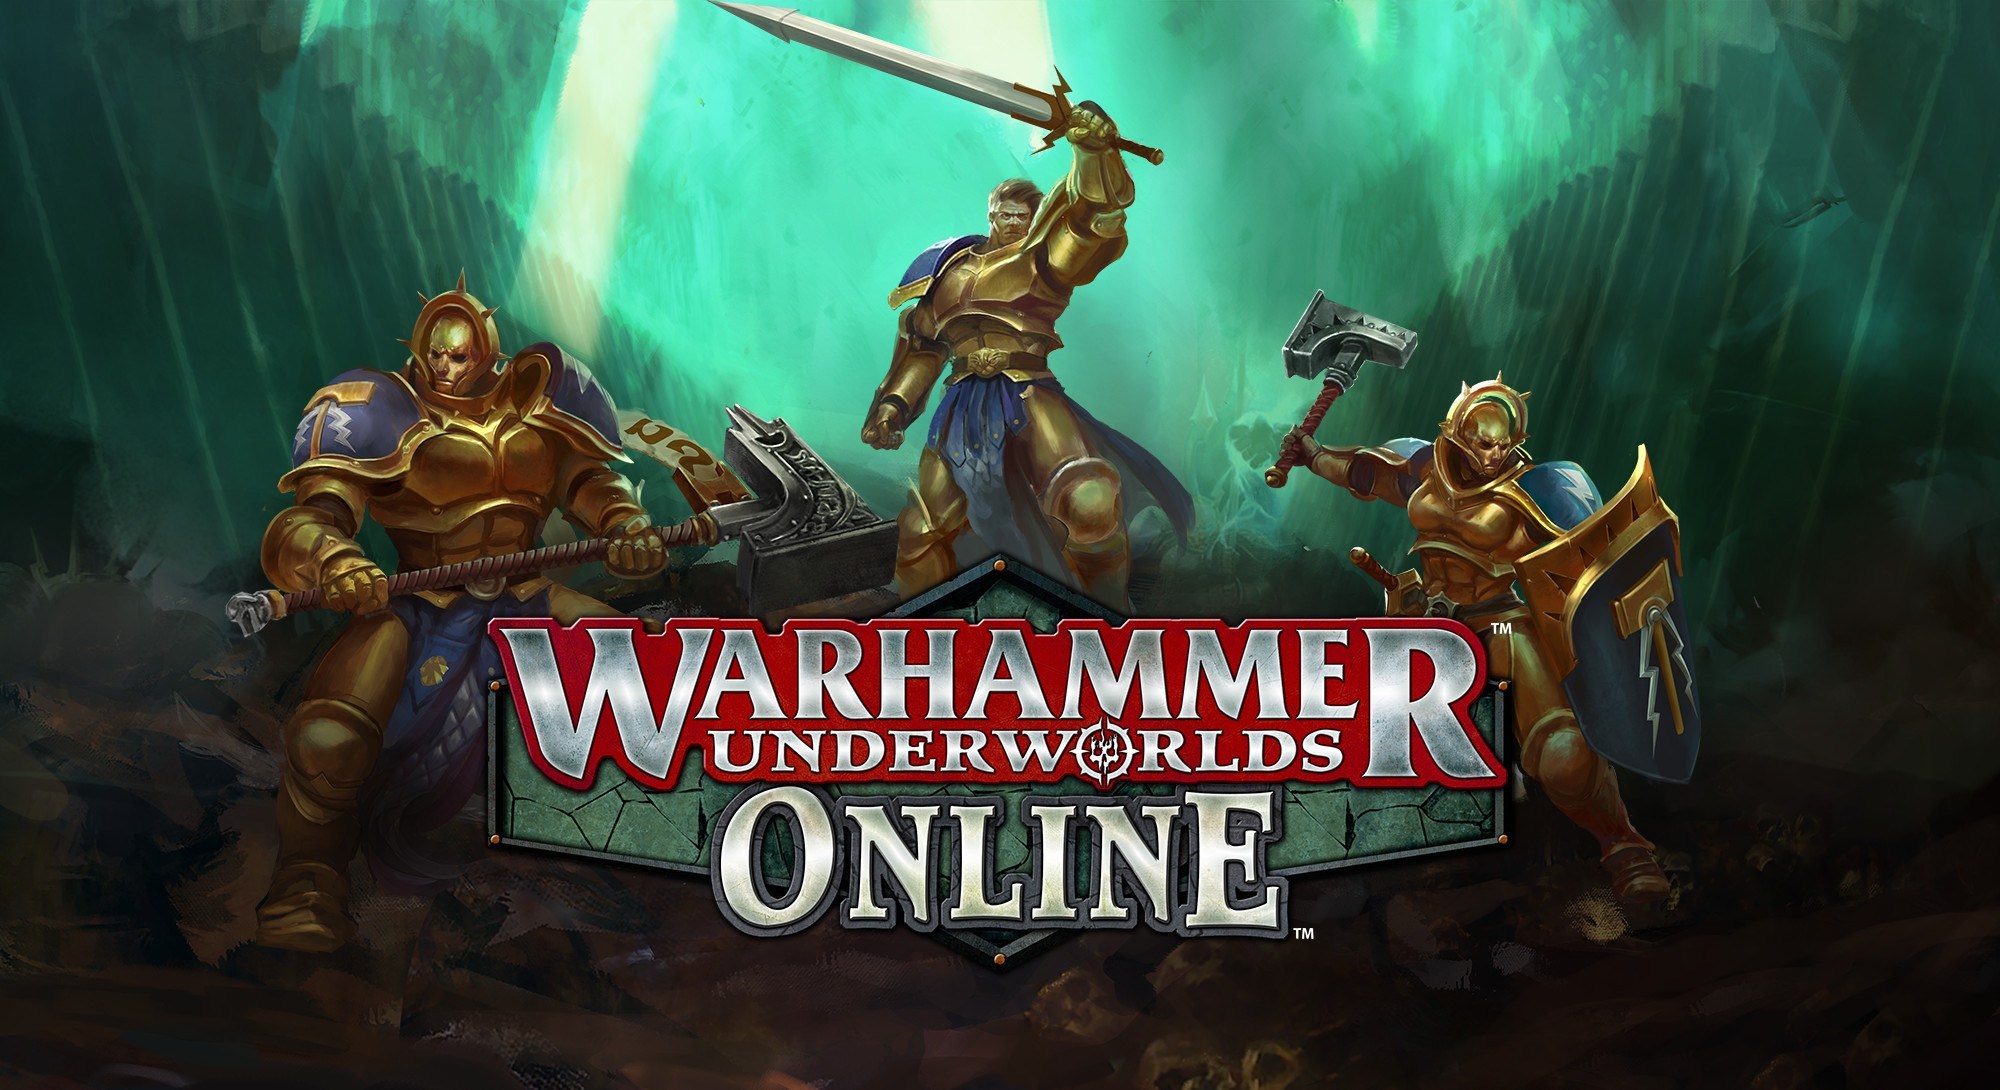 Warhammer Underworlds Online